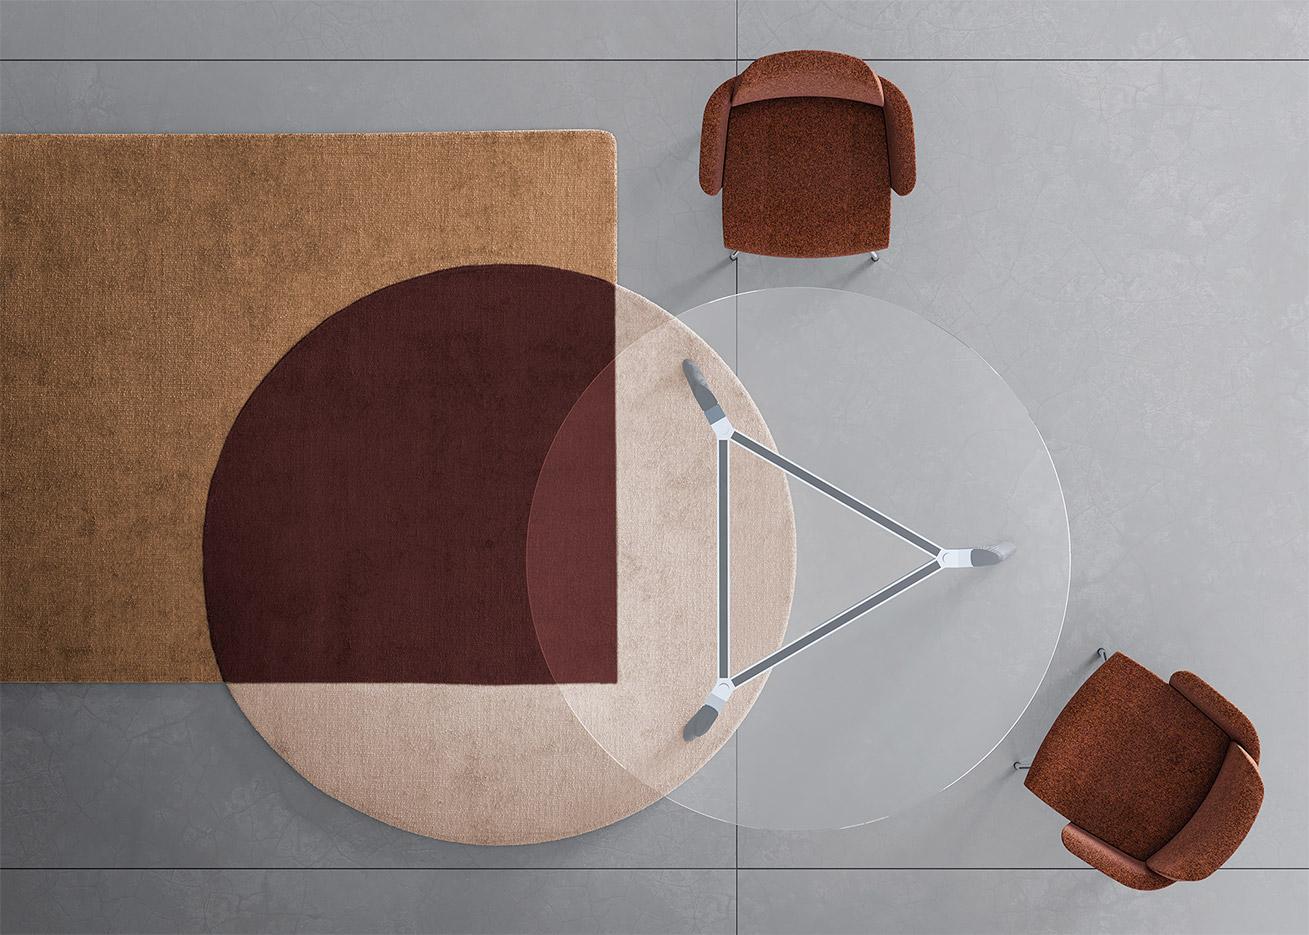 Table de réunion ronde ou triangulaire en bois, cuir ou verre, gamme Longo round - France Bureau